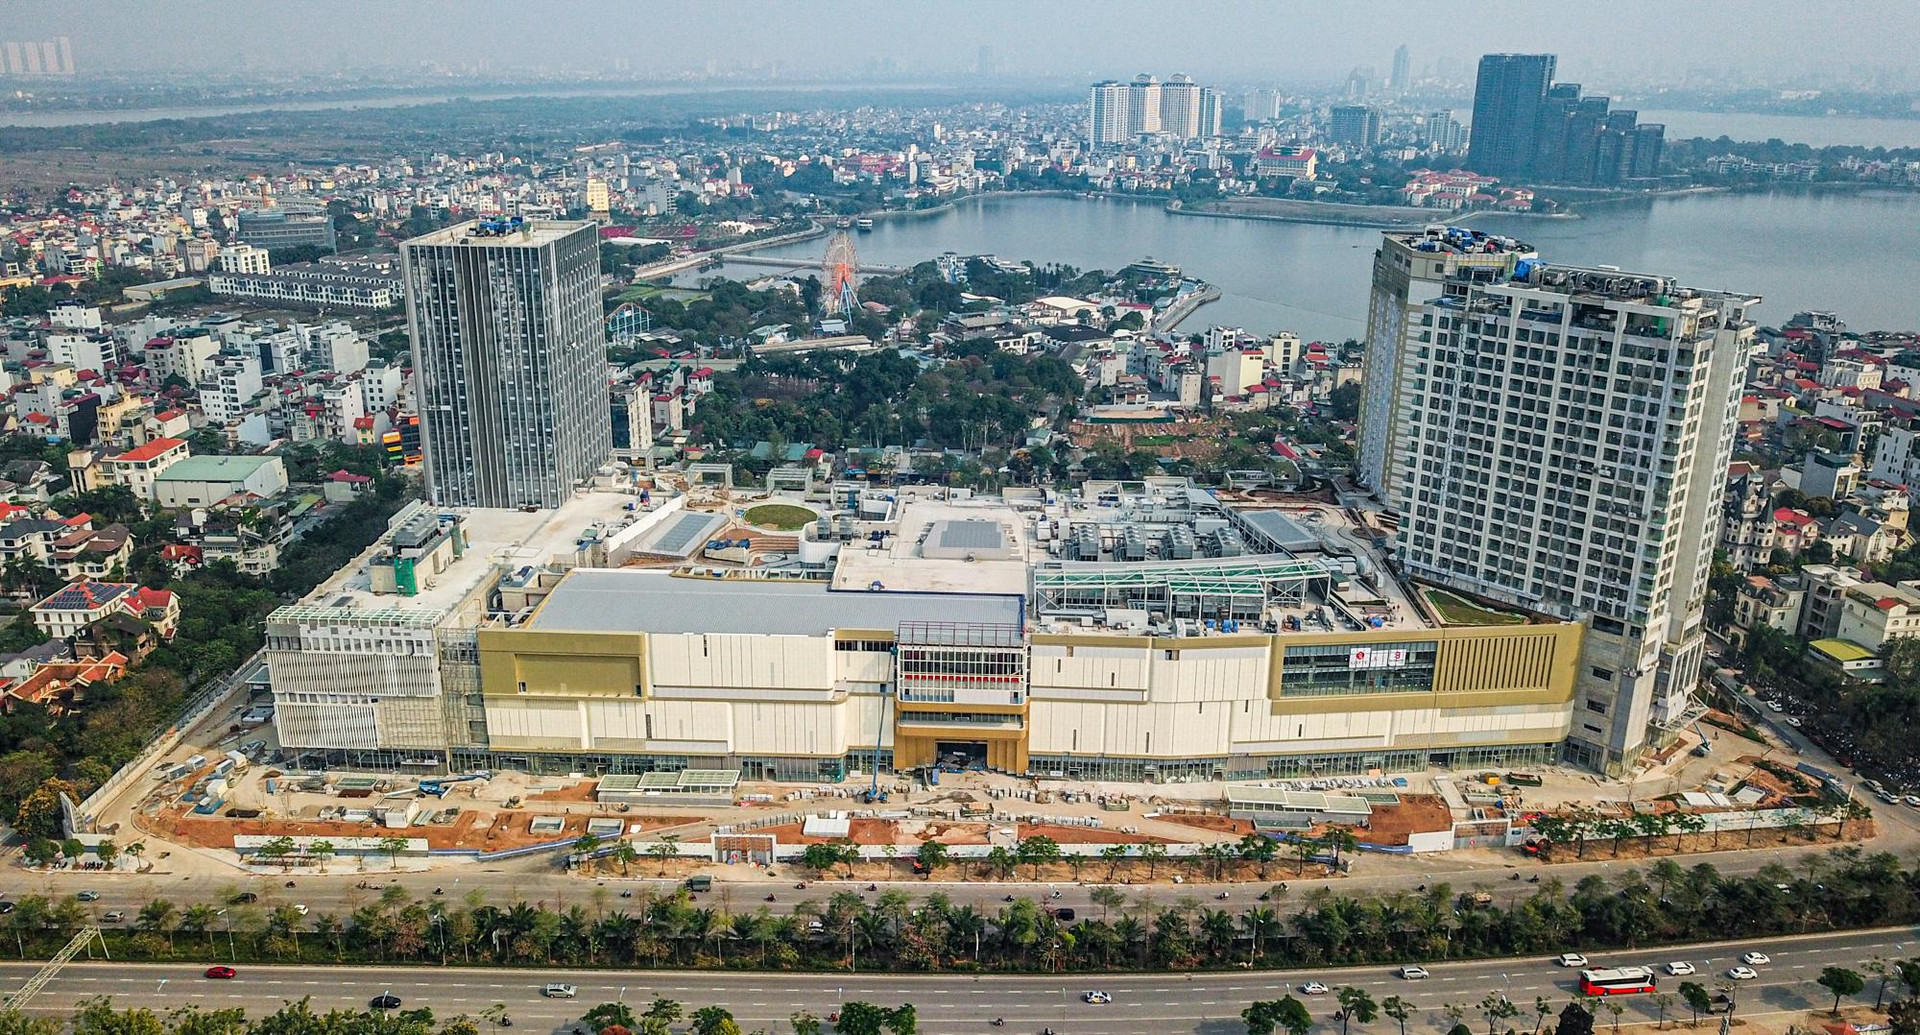 ‏[Photo Essay] Chung cư quanh TTTM đắt nhất thủ đô Lotte Mall Hanoi - Võ Chí Công đã hình thành mặt bằng giá mới lên đến 100 triệu đồng/m2 - Ảnh 1.